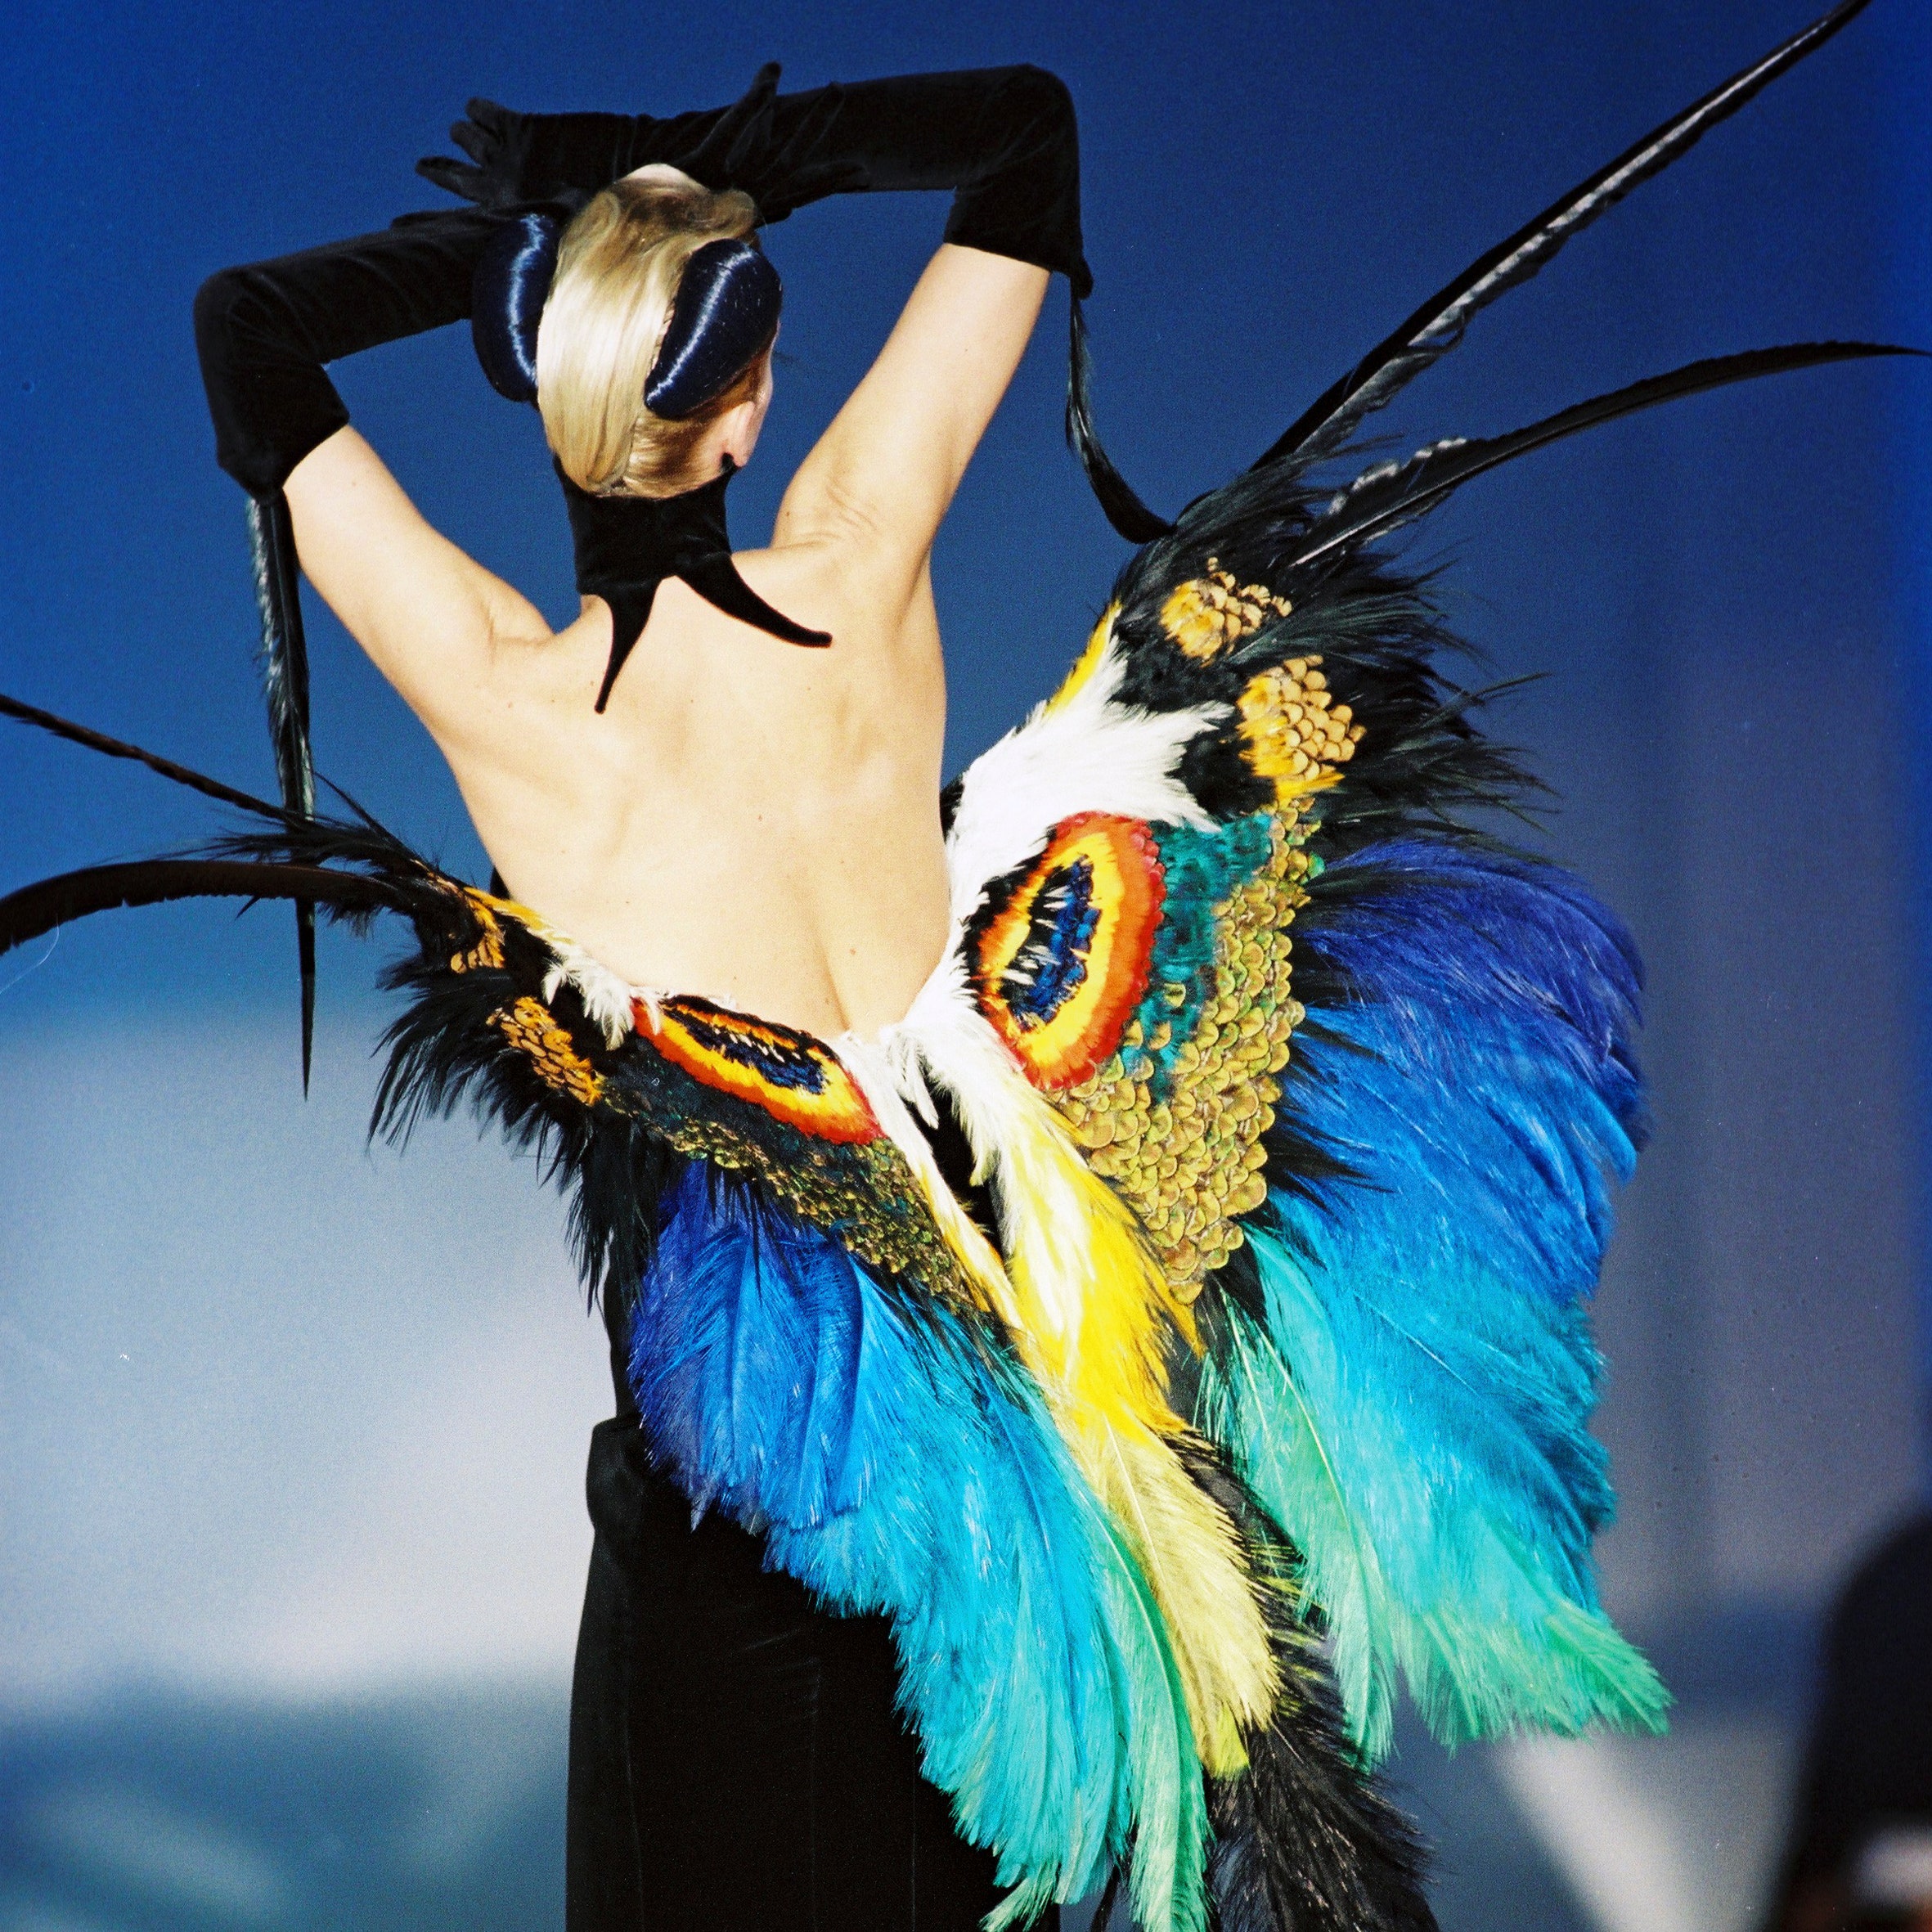 "Rara Avis", aperta la mostra che raccoglie i rarissimi abiti-uccello e racconta l'ossessione degli stilisti per i volatili